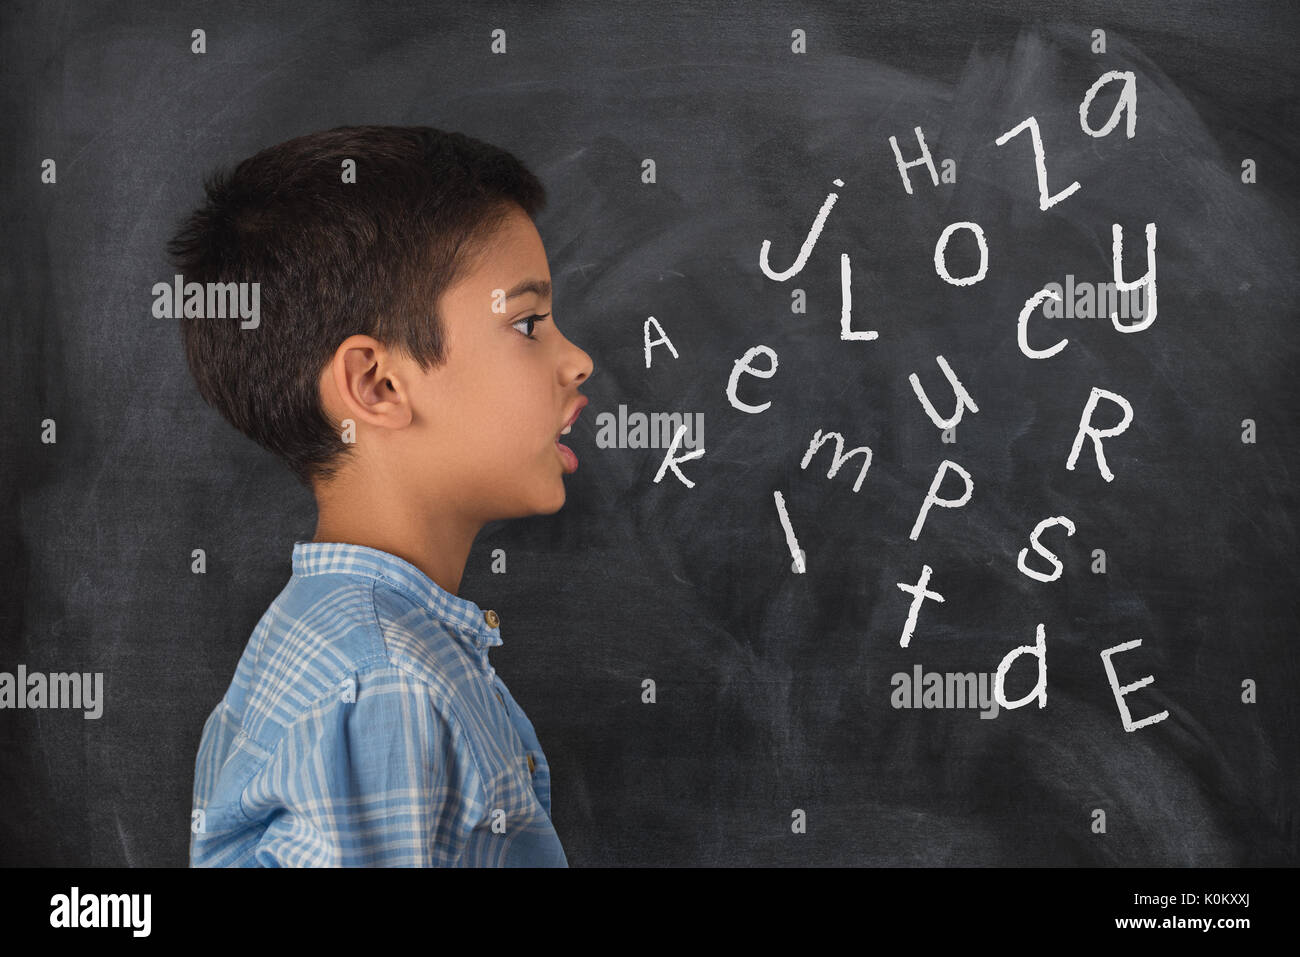 Kind sprechen und die Buchstaben des Alphabets, das aus Seinem Mund kommt Stockfoto